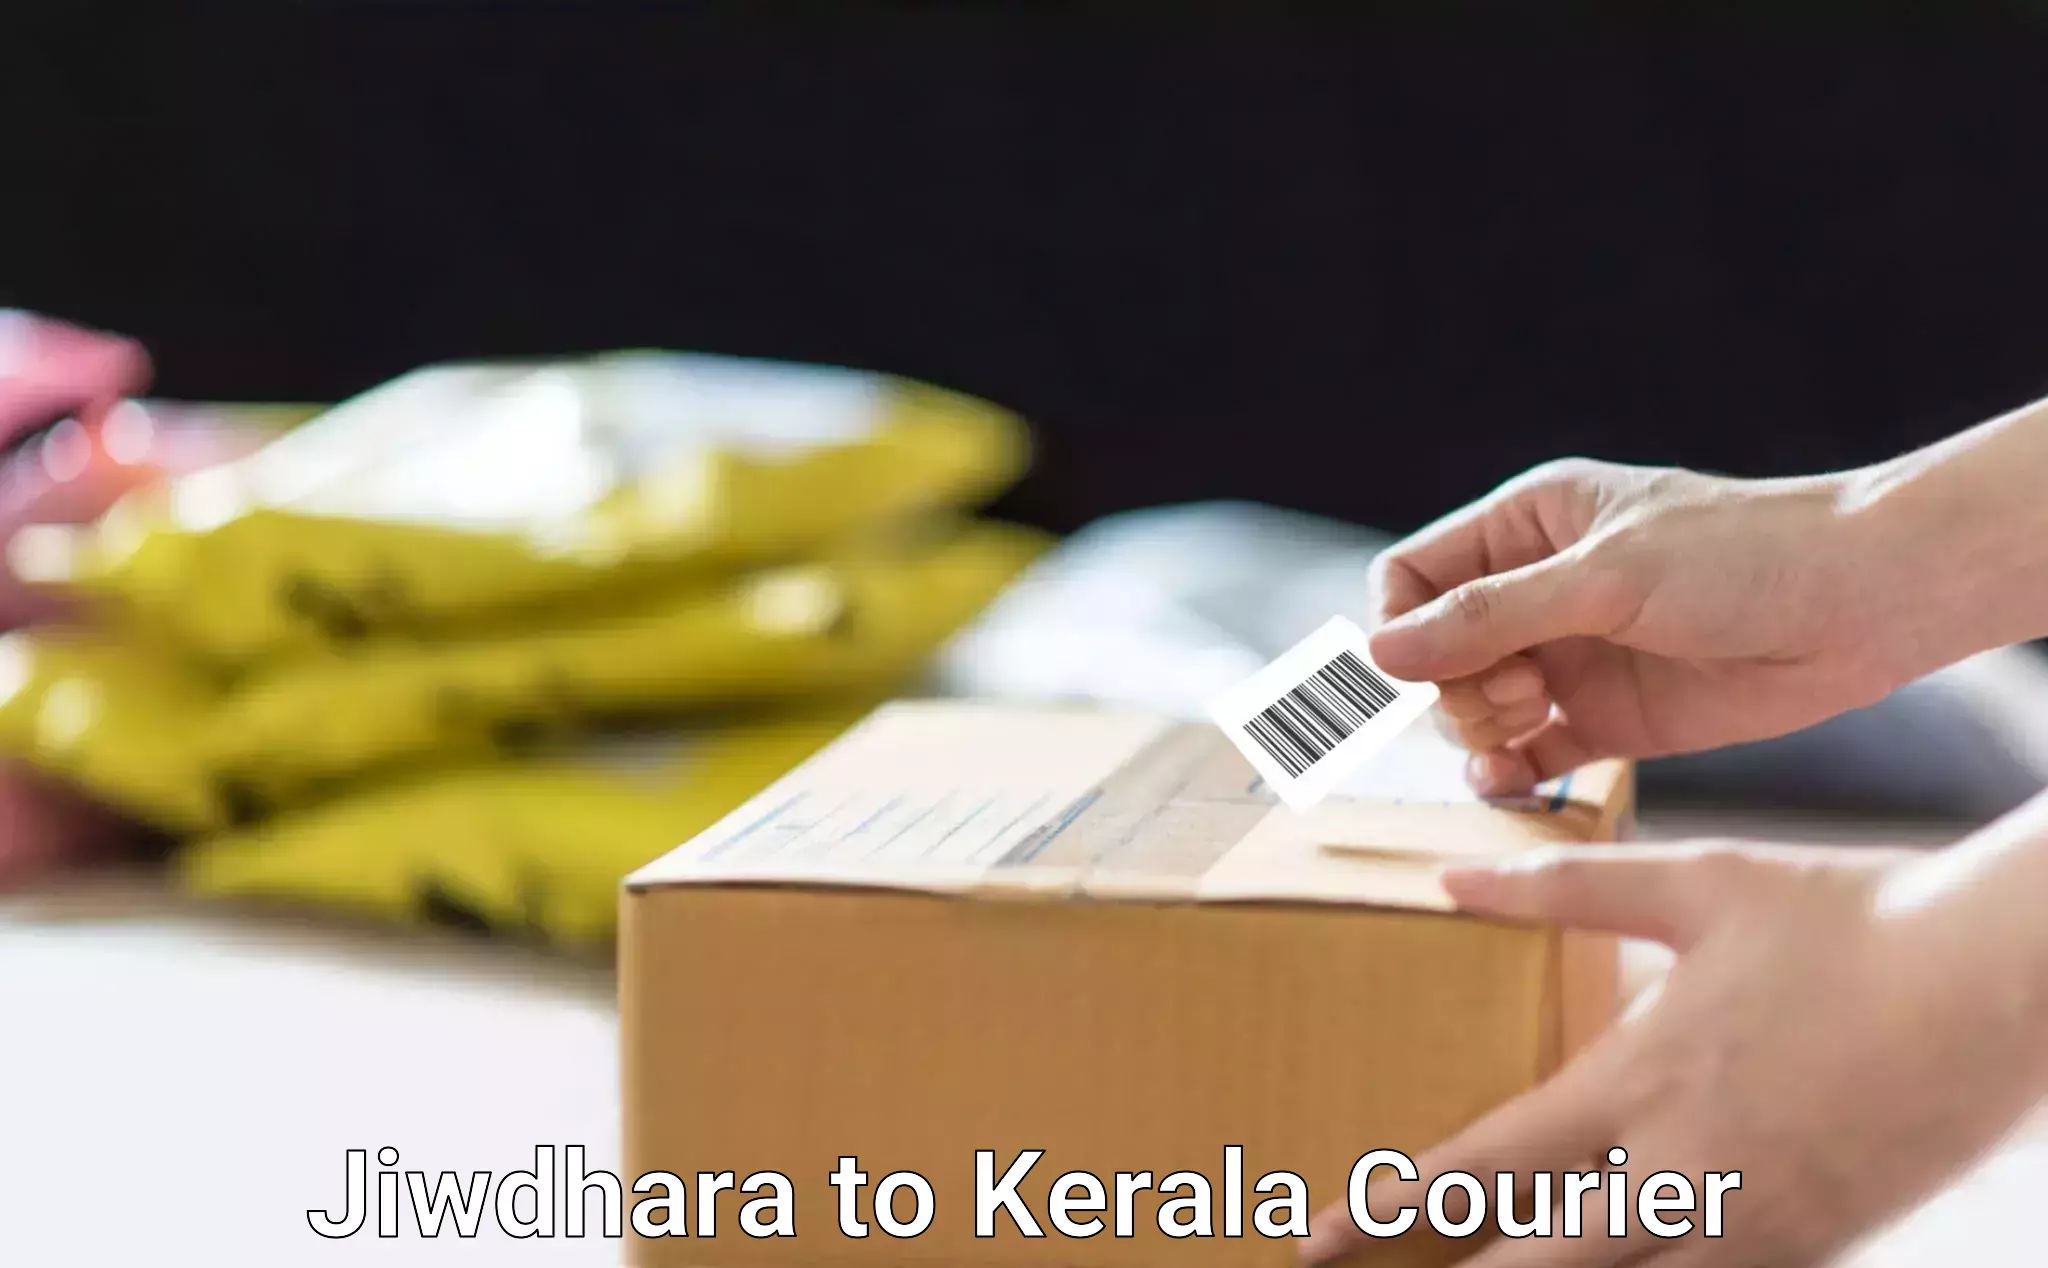 Local household movers Jiwdhara to Kerala